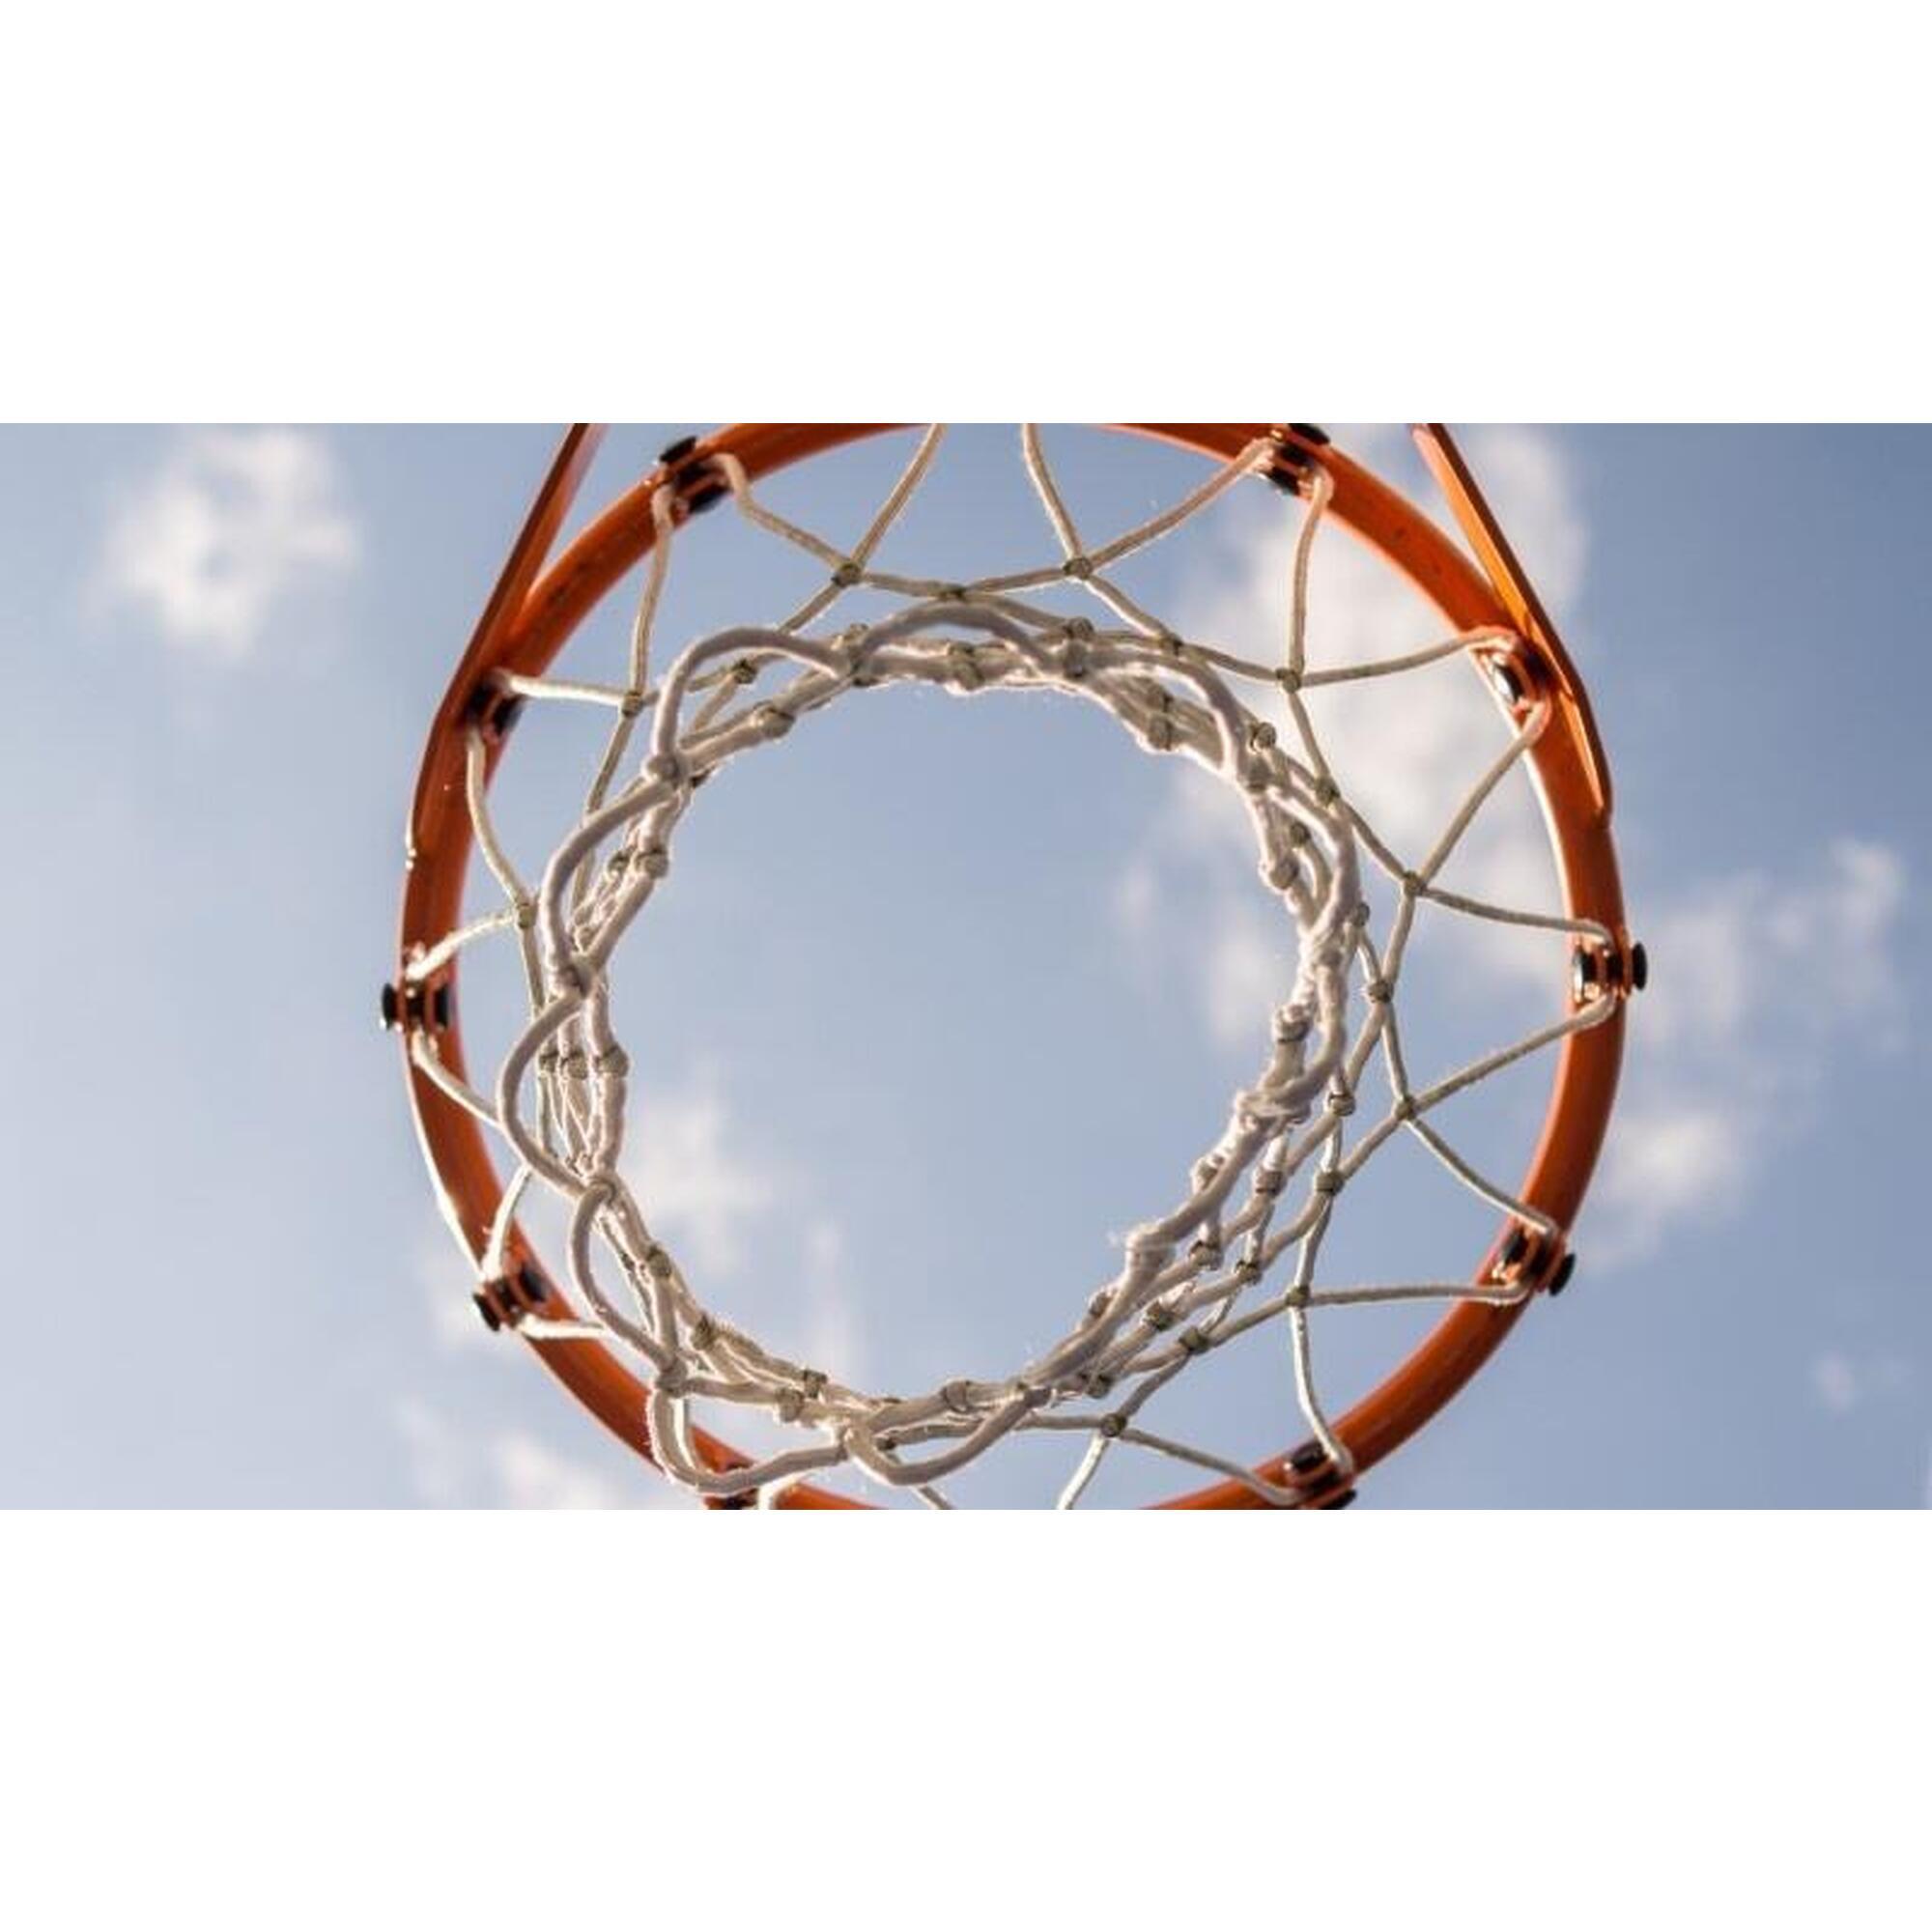 Panier de basket sur pied réglable de 225 - 305 cm - Houston - professionnelle